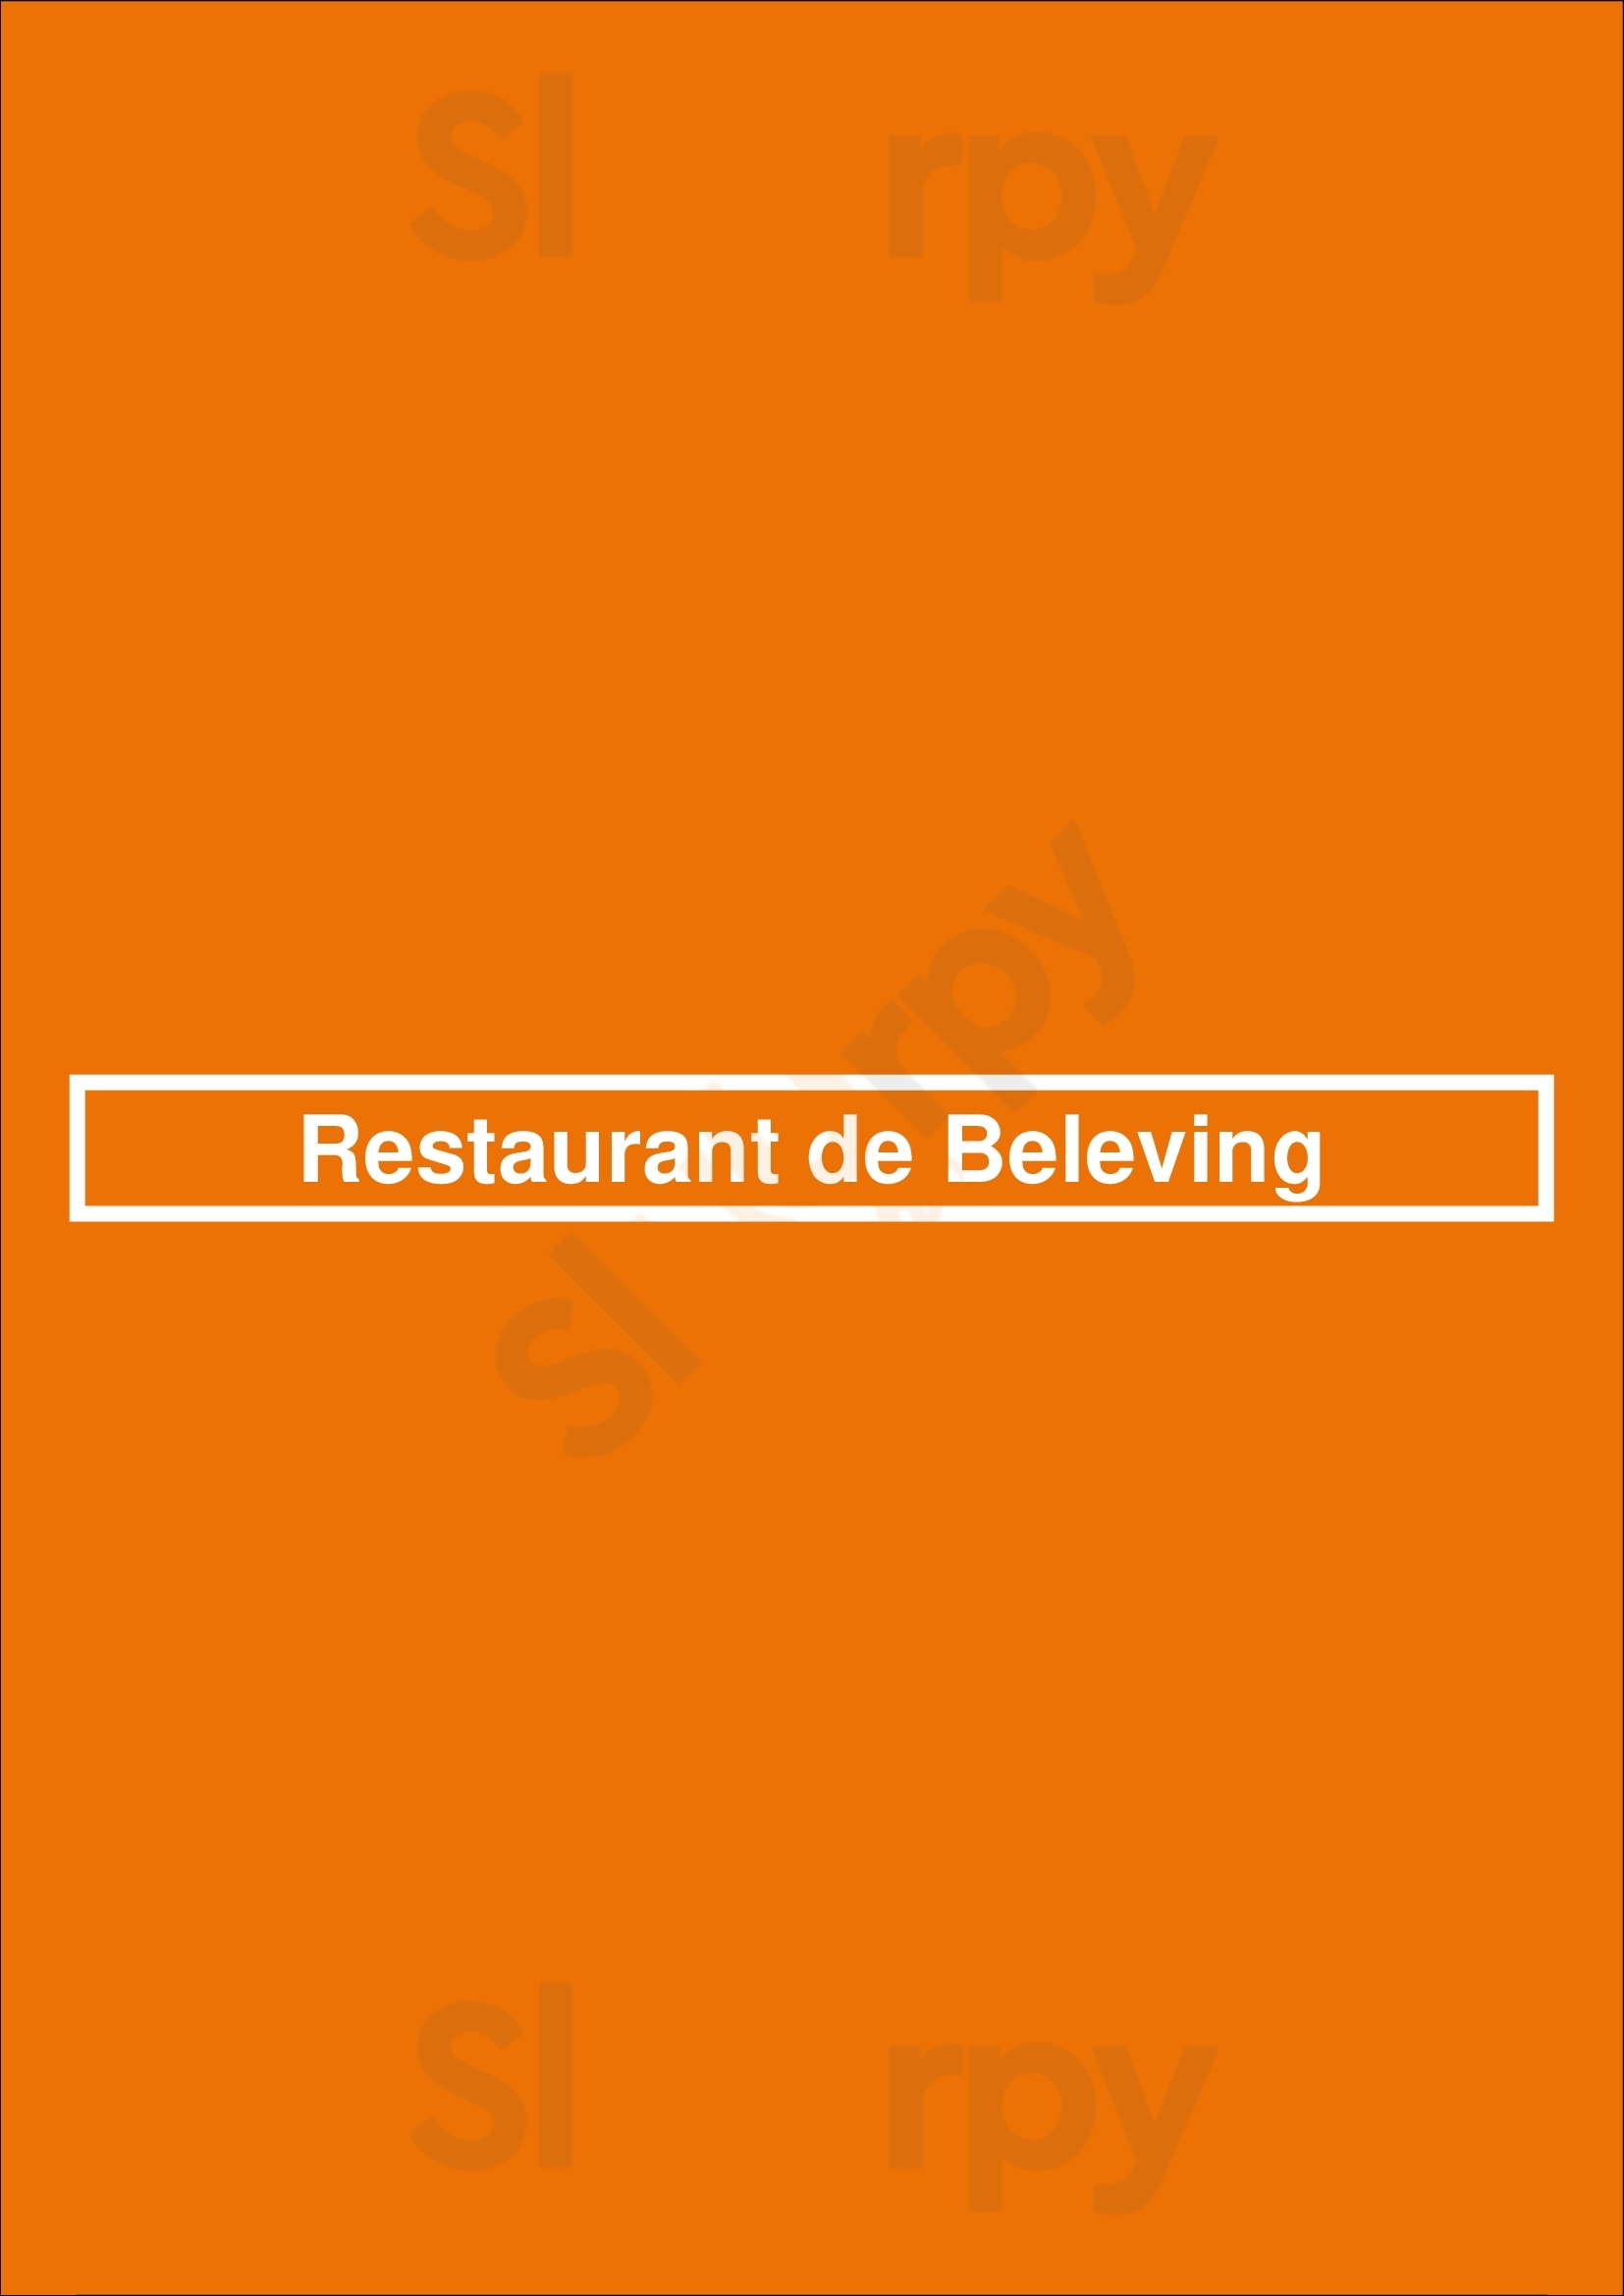 Restaurant De Beleving Asten Menu - 1